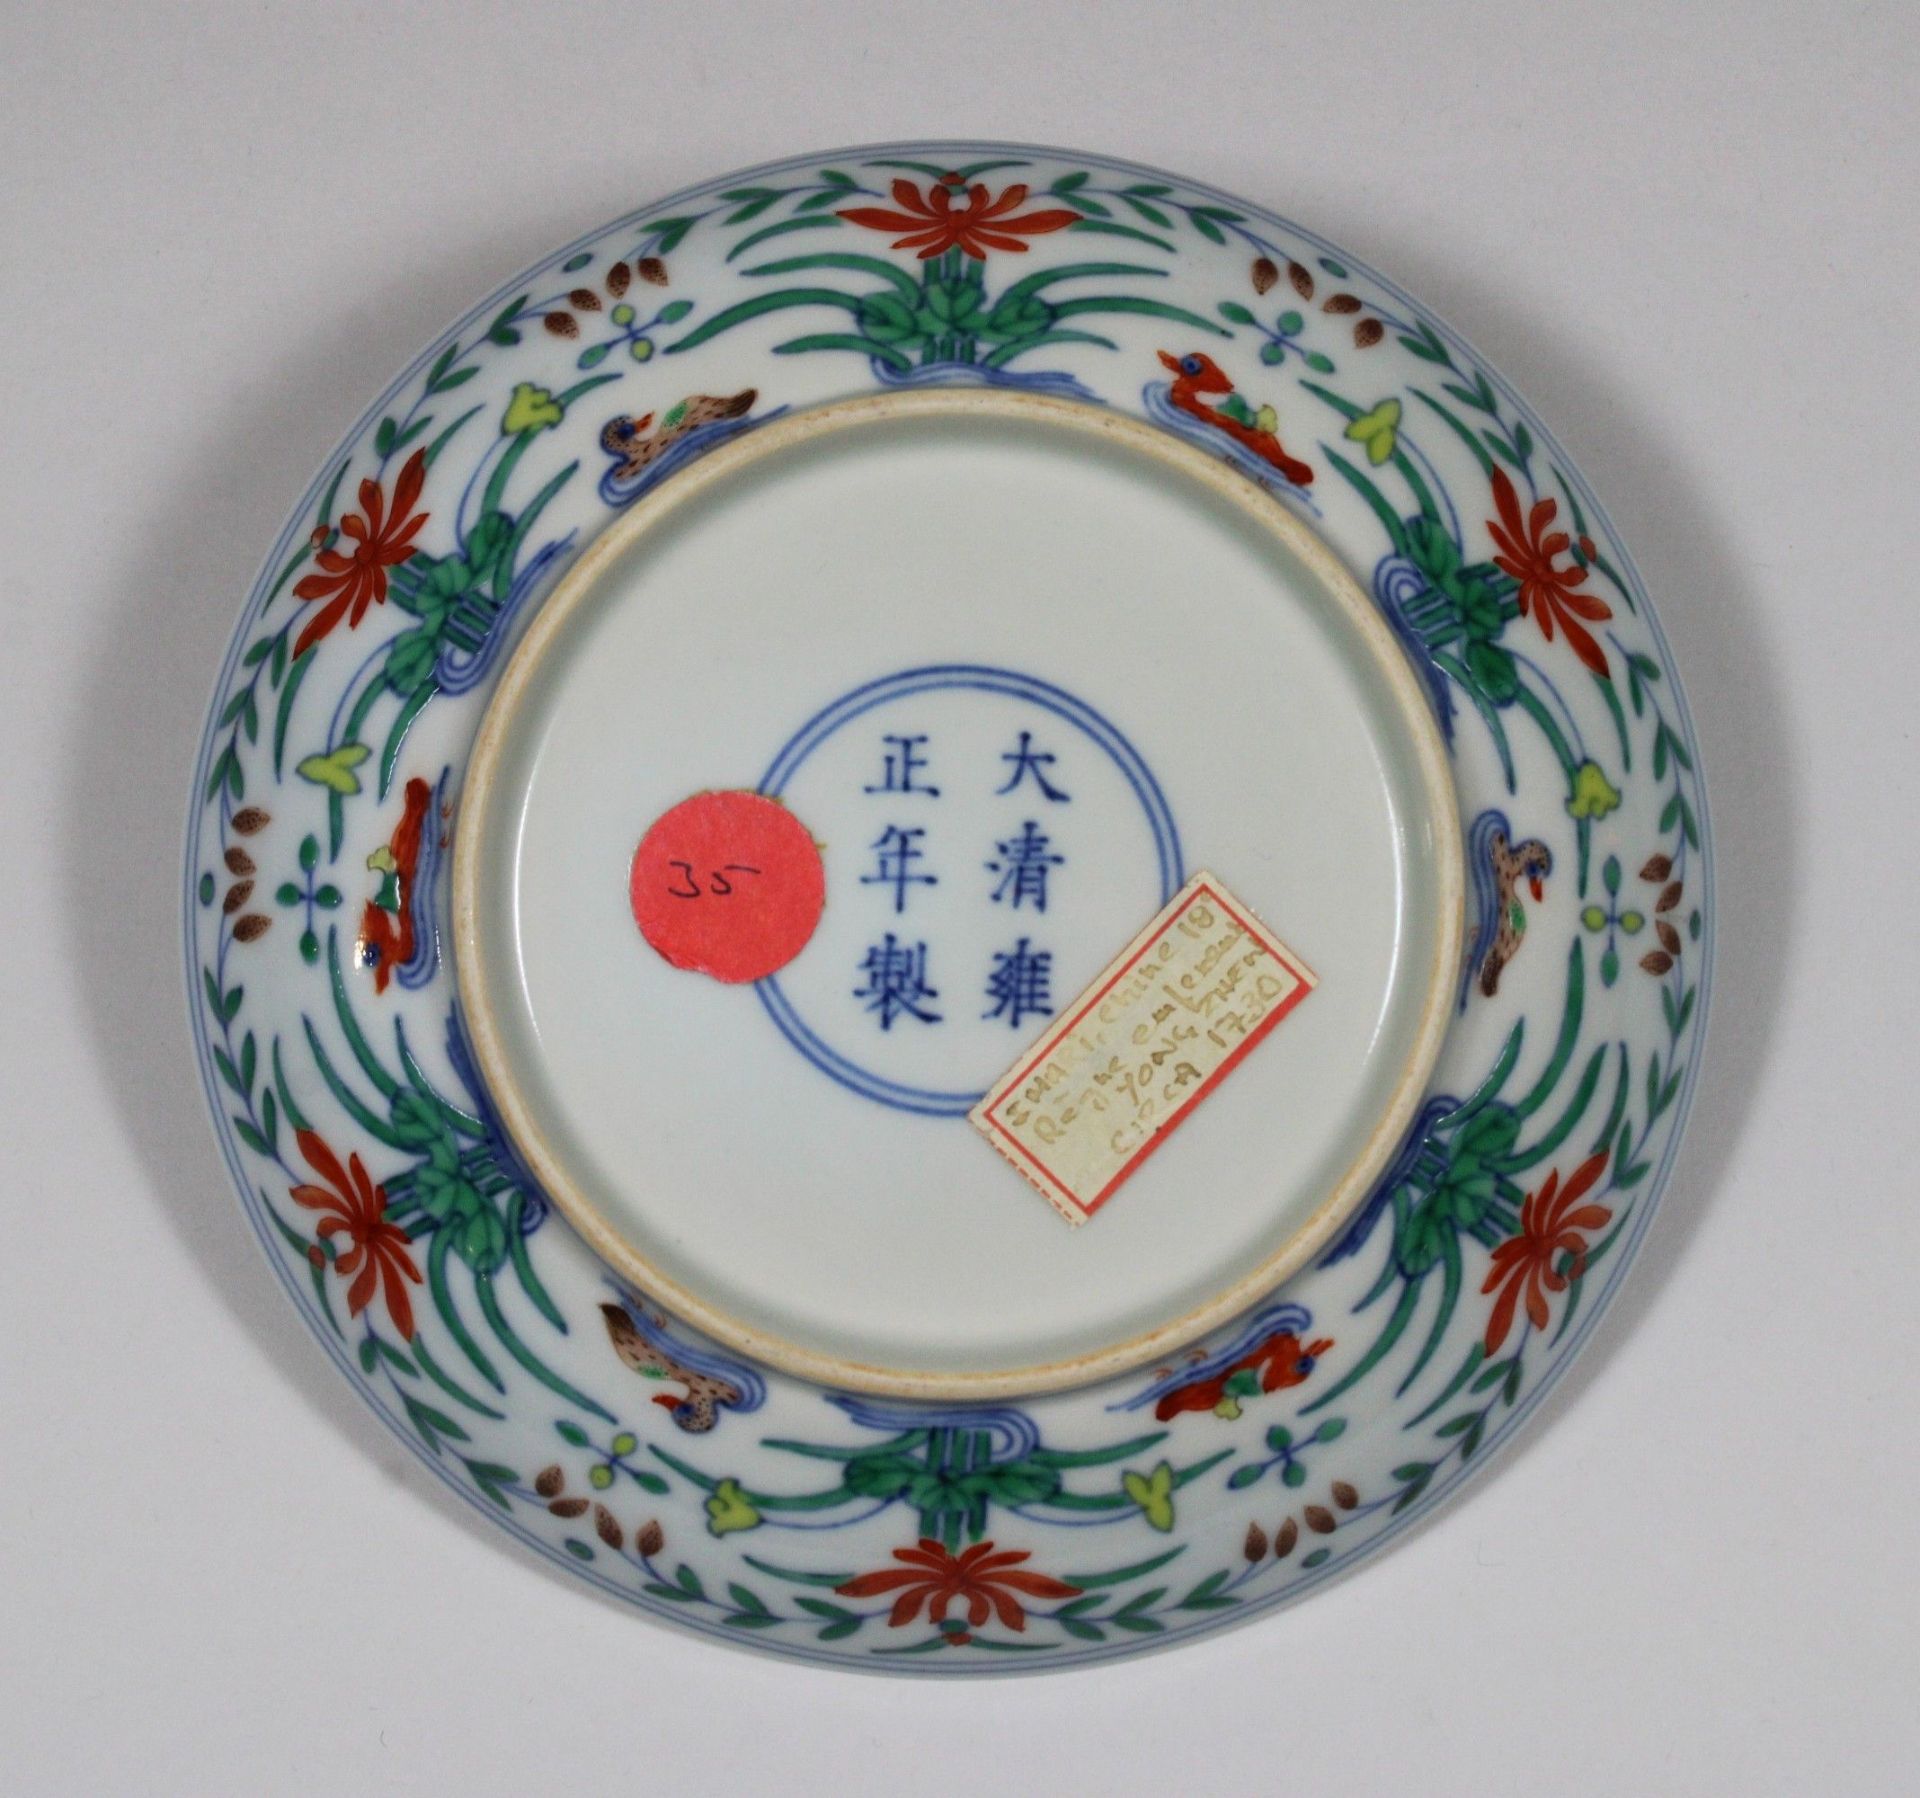 Porzellan, Teller, China, 18. Jh., Yong Zhen, innen u. außen farbig bemalt, Markenzeichen am - Image 2 of 2